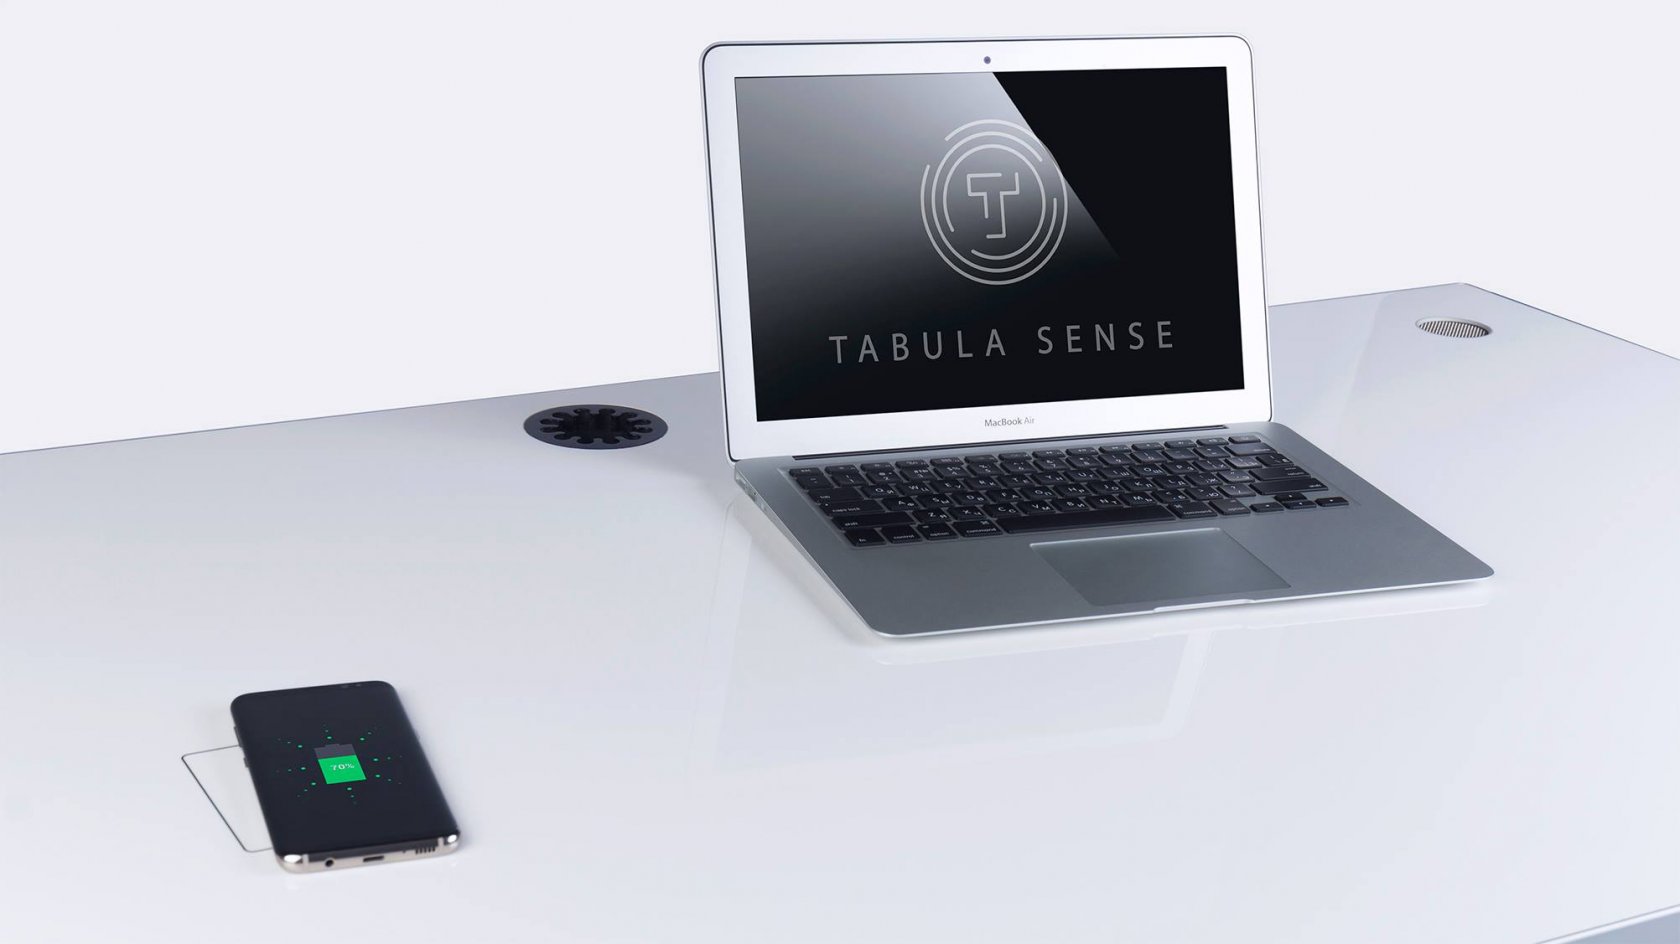  tabula sense 2.0  с регулировкой высоты